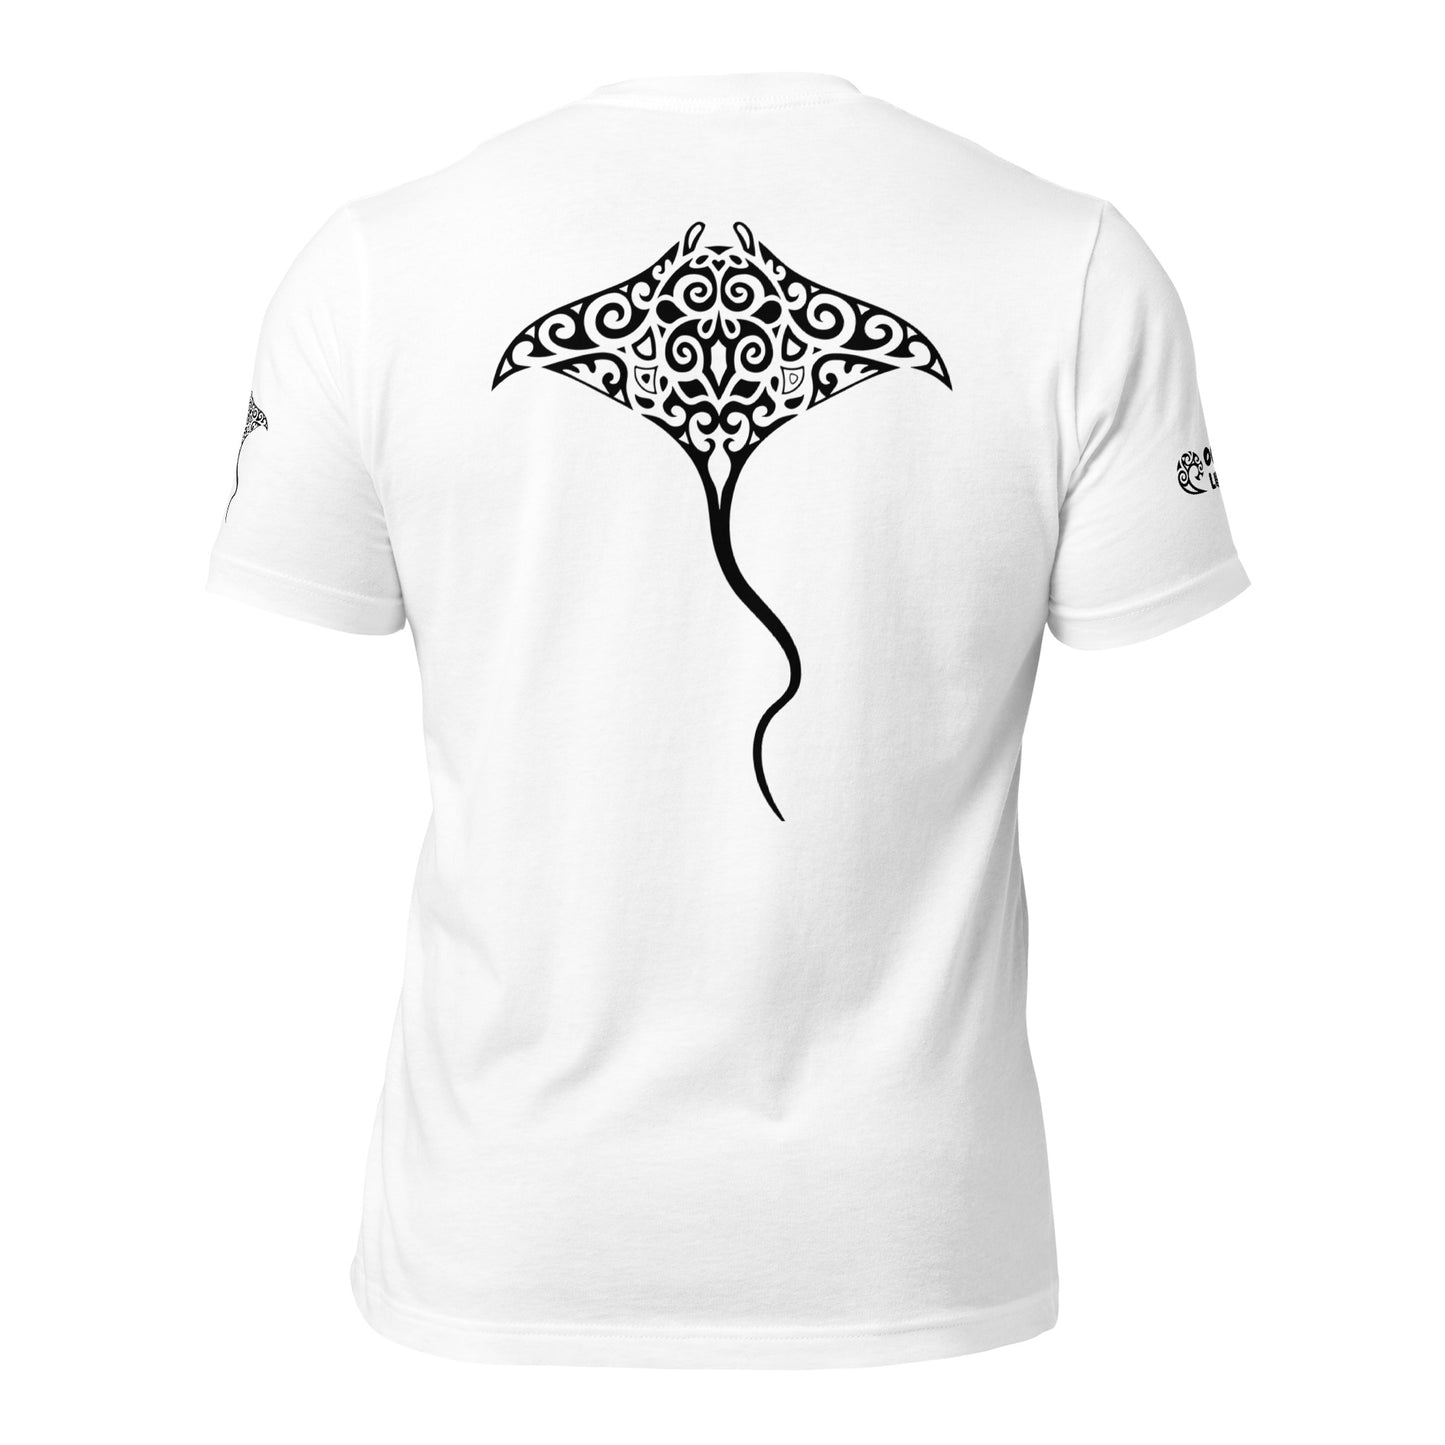 Polynesian T-shirt Manta Ray Tribal Samoan For Men and Women Front Center Black on White 2